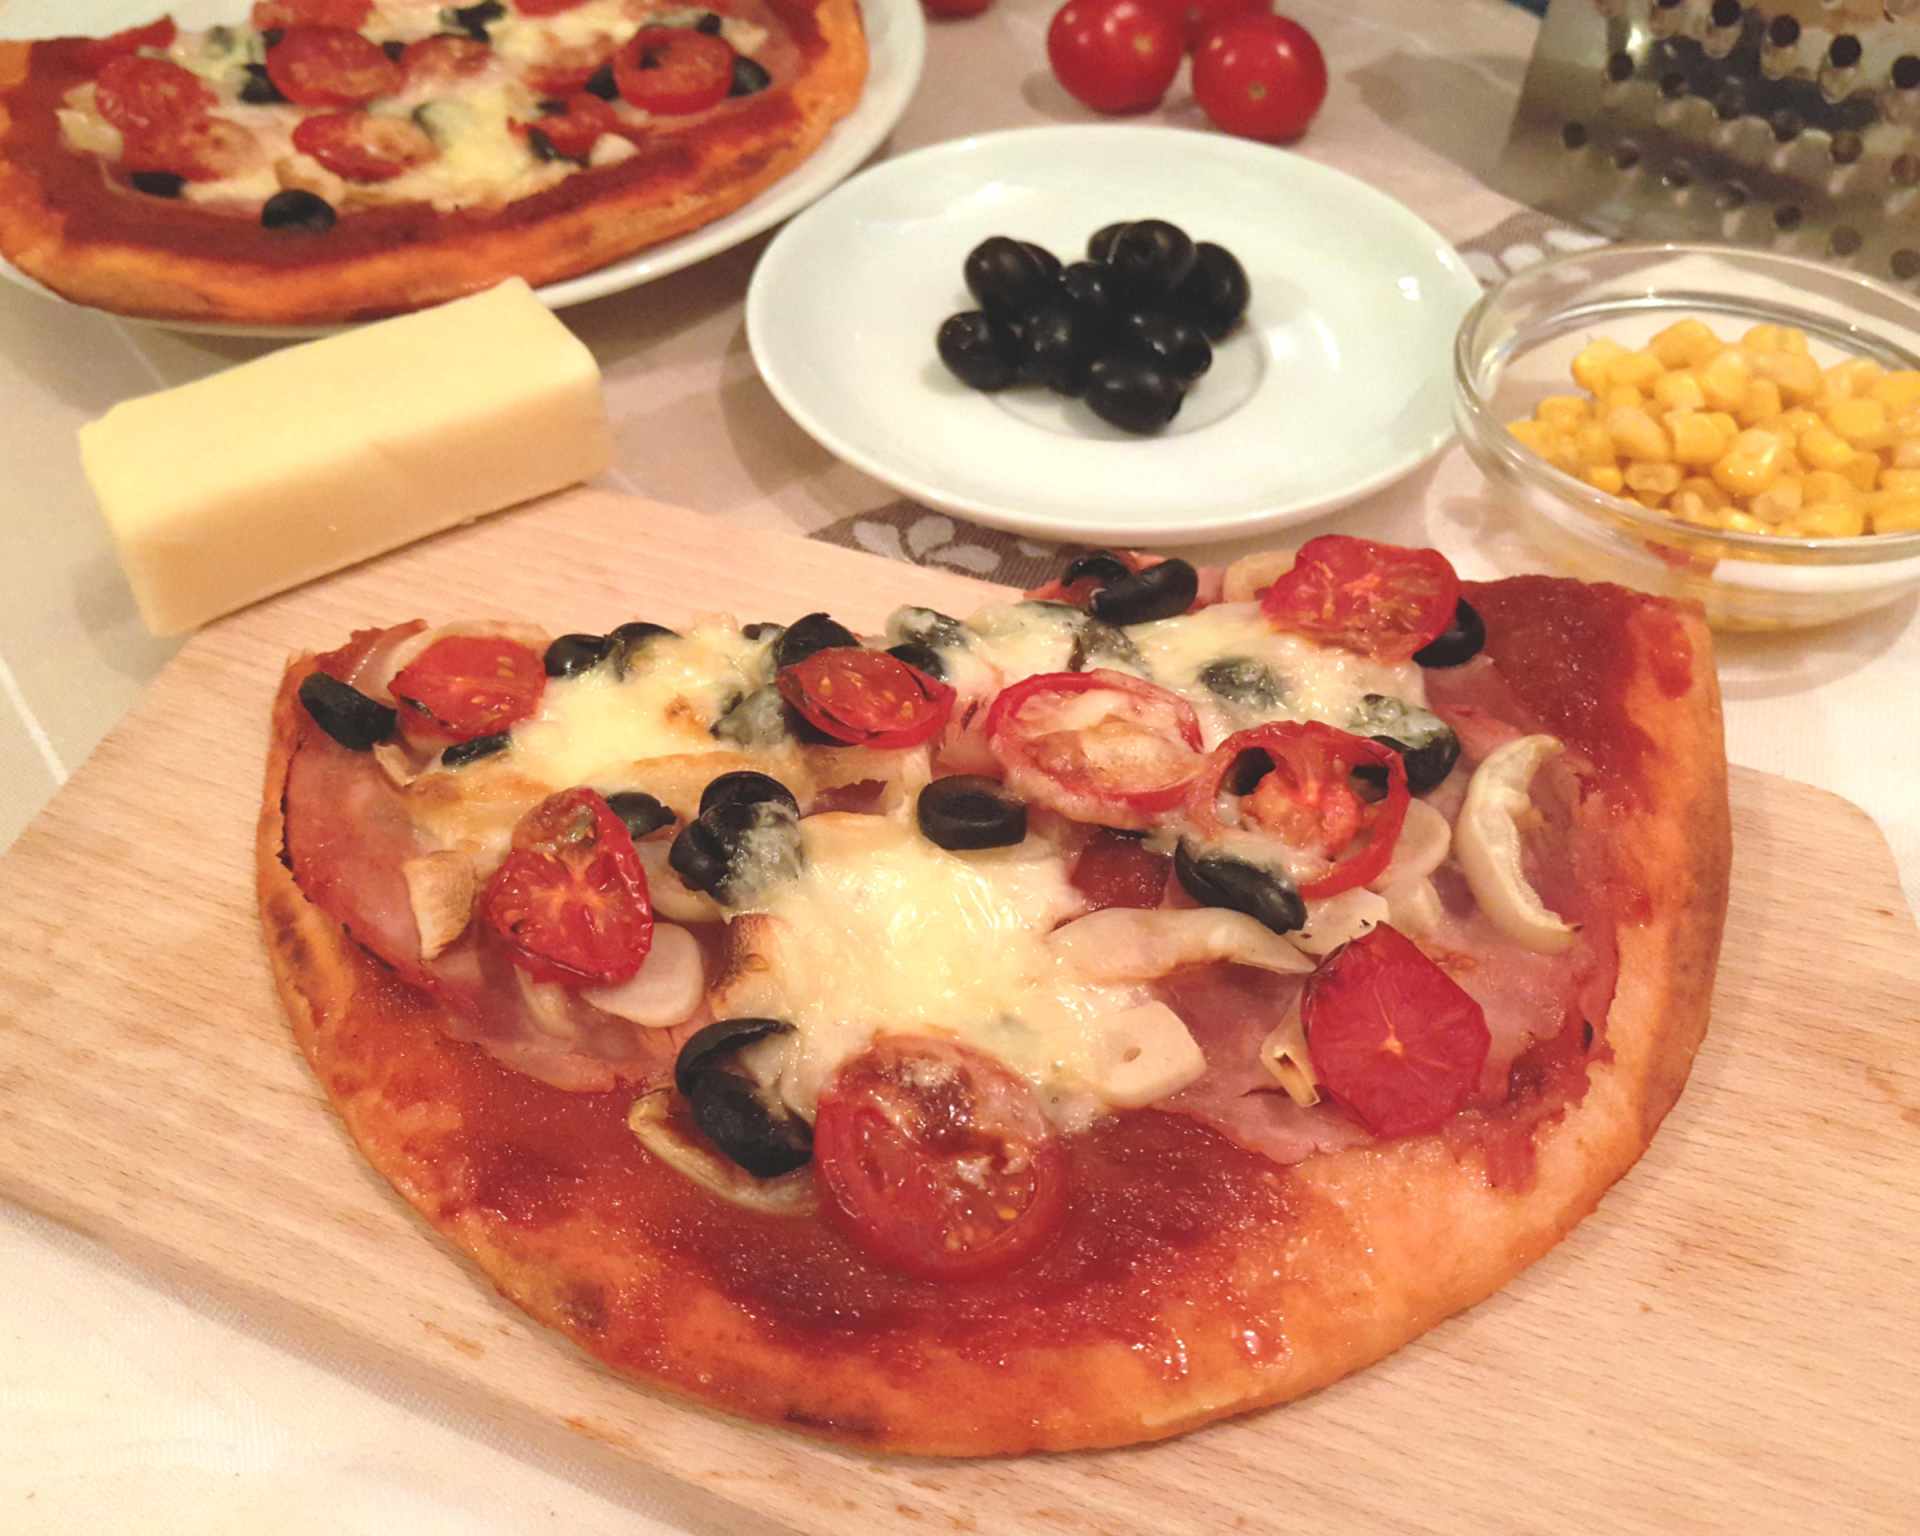 Polotovarová pizza, paradajkový základ, paprikovo-šunkovo-olivová so syrom